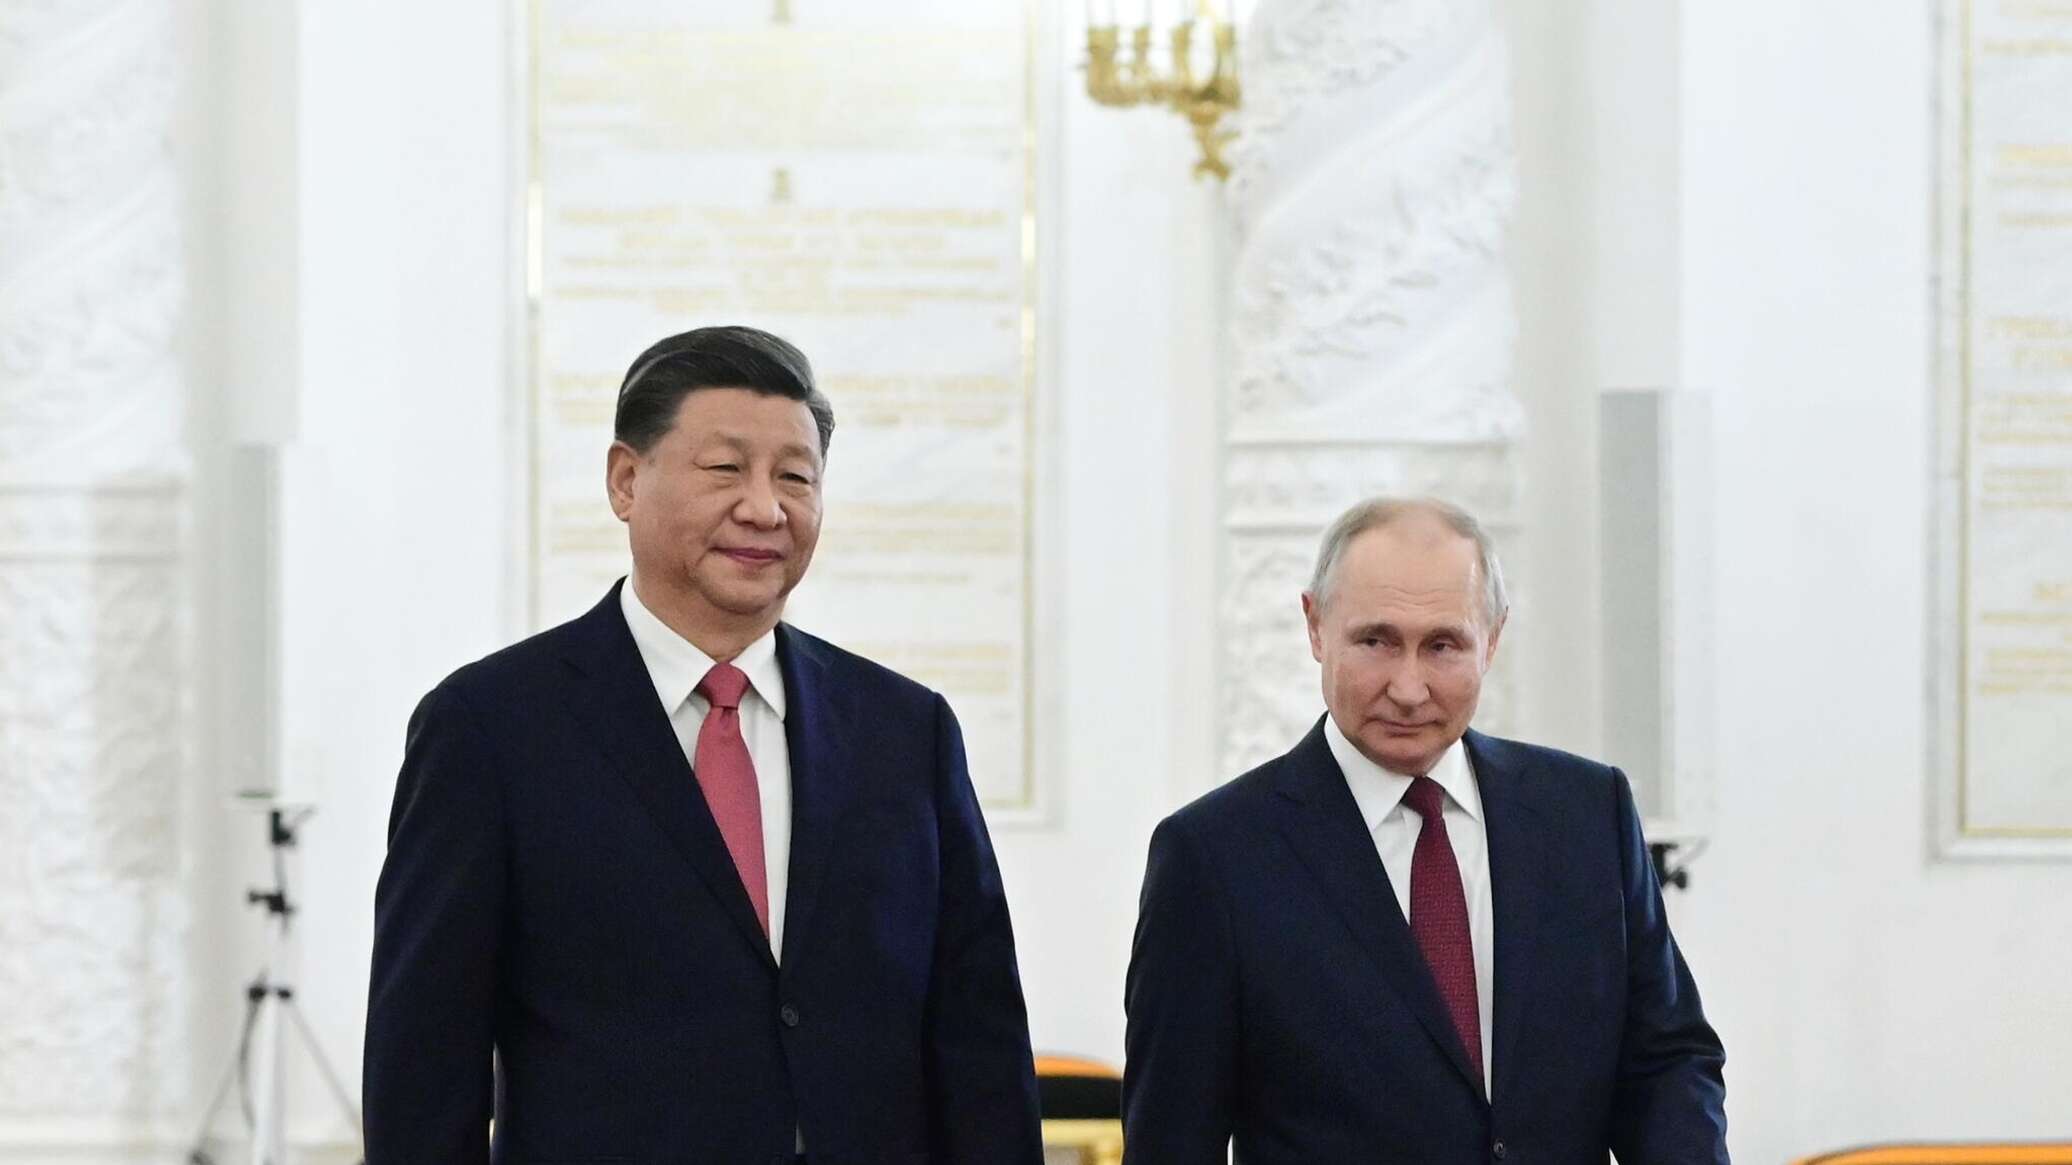 بوتين: أفكار روسيا والصين بشأن "أوراسيا الكبرى" تتطابق تماما